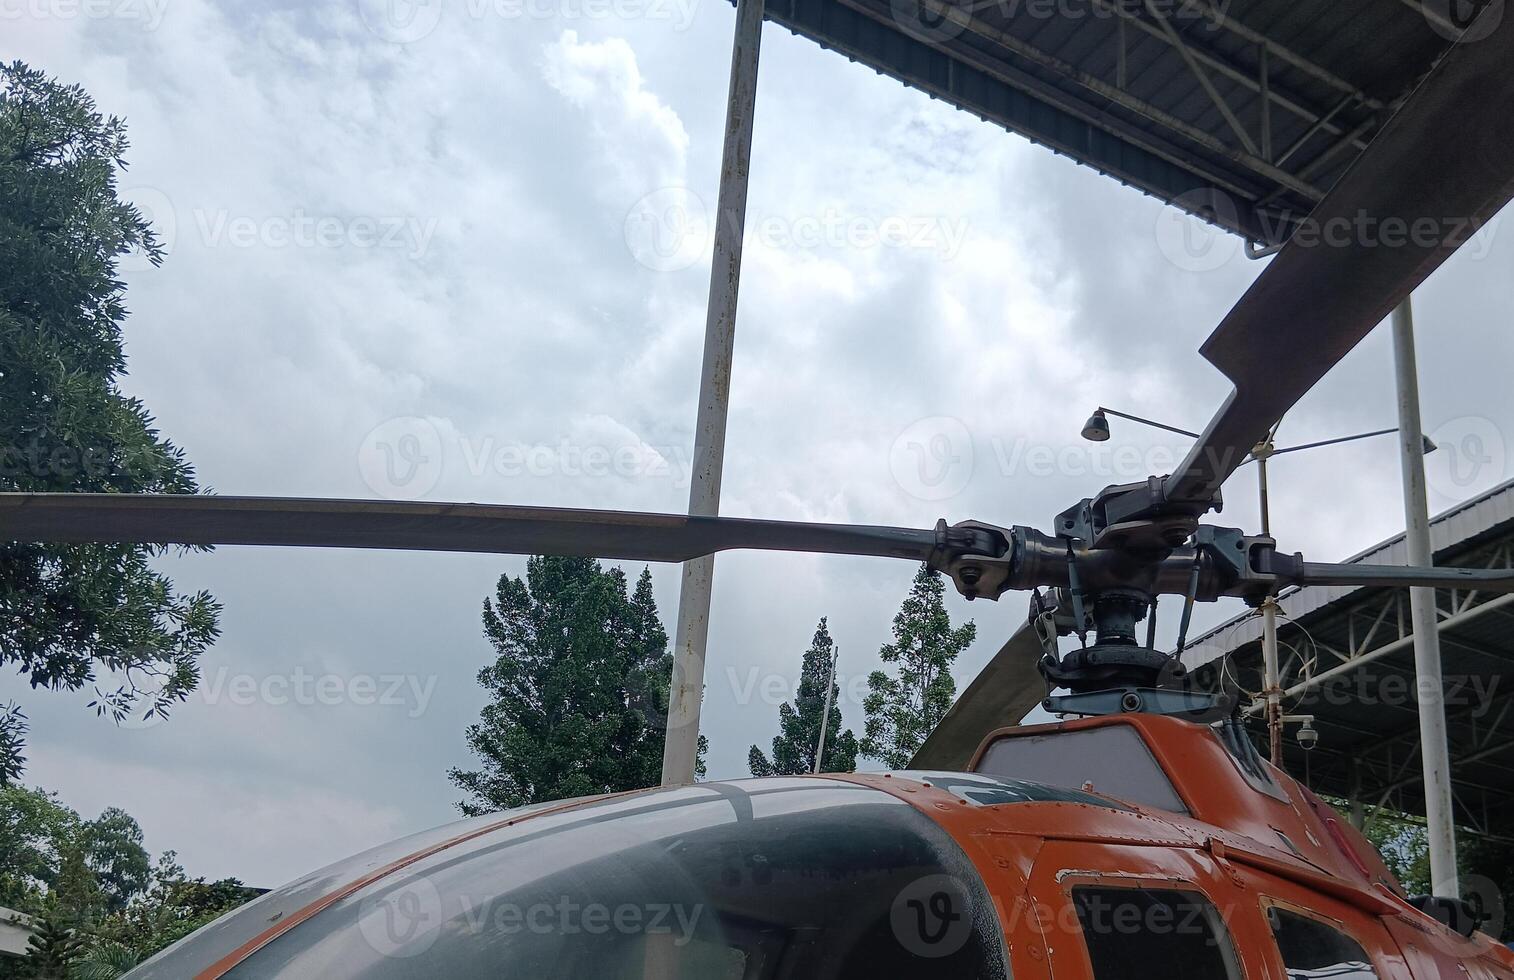 une hélicoptère dans le hangar photo